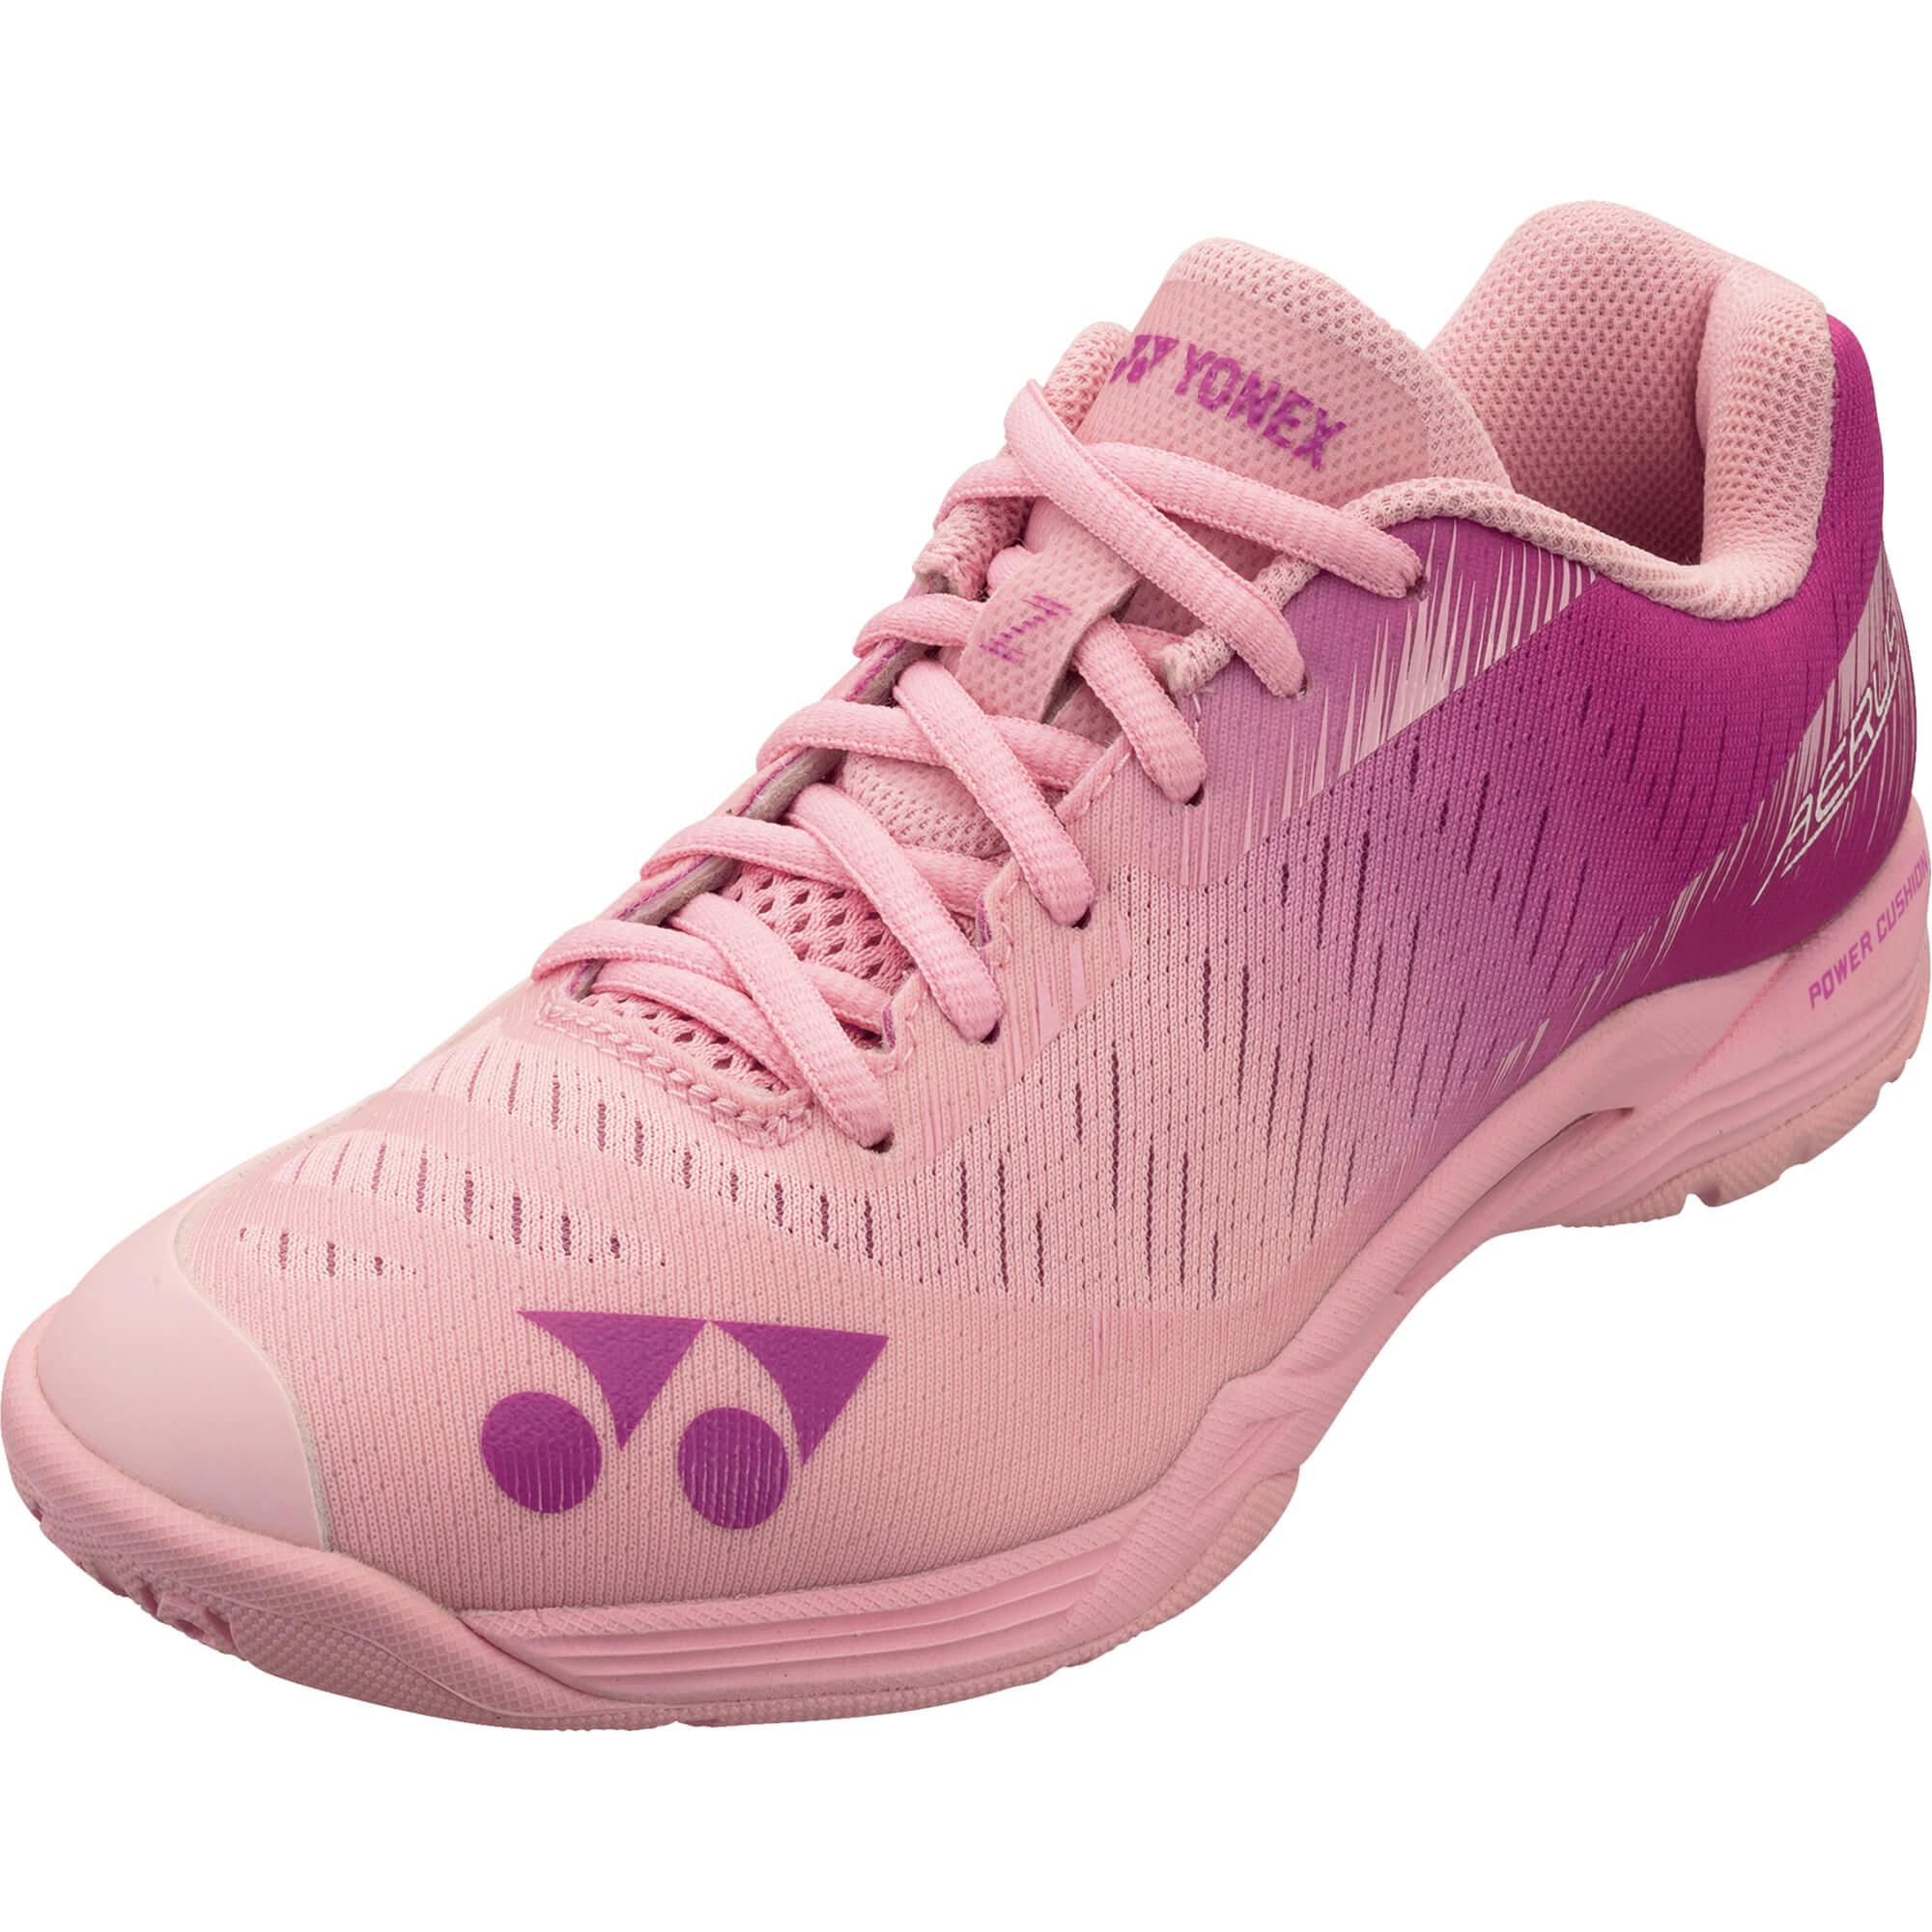 Yonex Womens Aerus Z Badminton Shoes - Pastel Pink - Tennisnuts.com